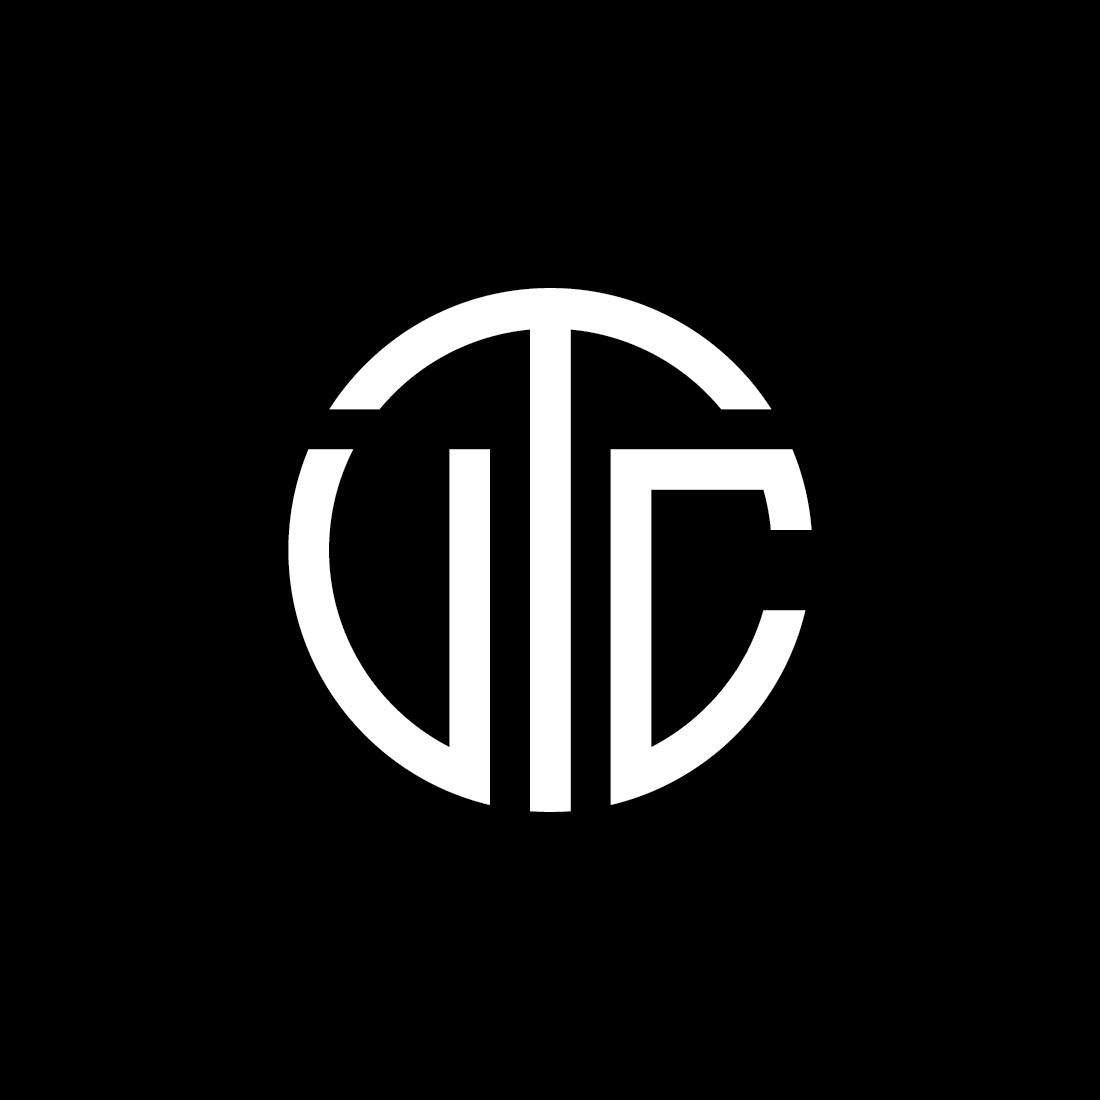 VTC Letters Monogram Logo black and white preview.